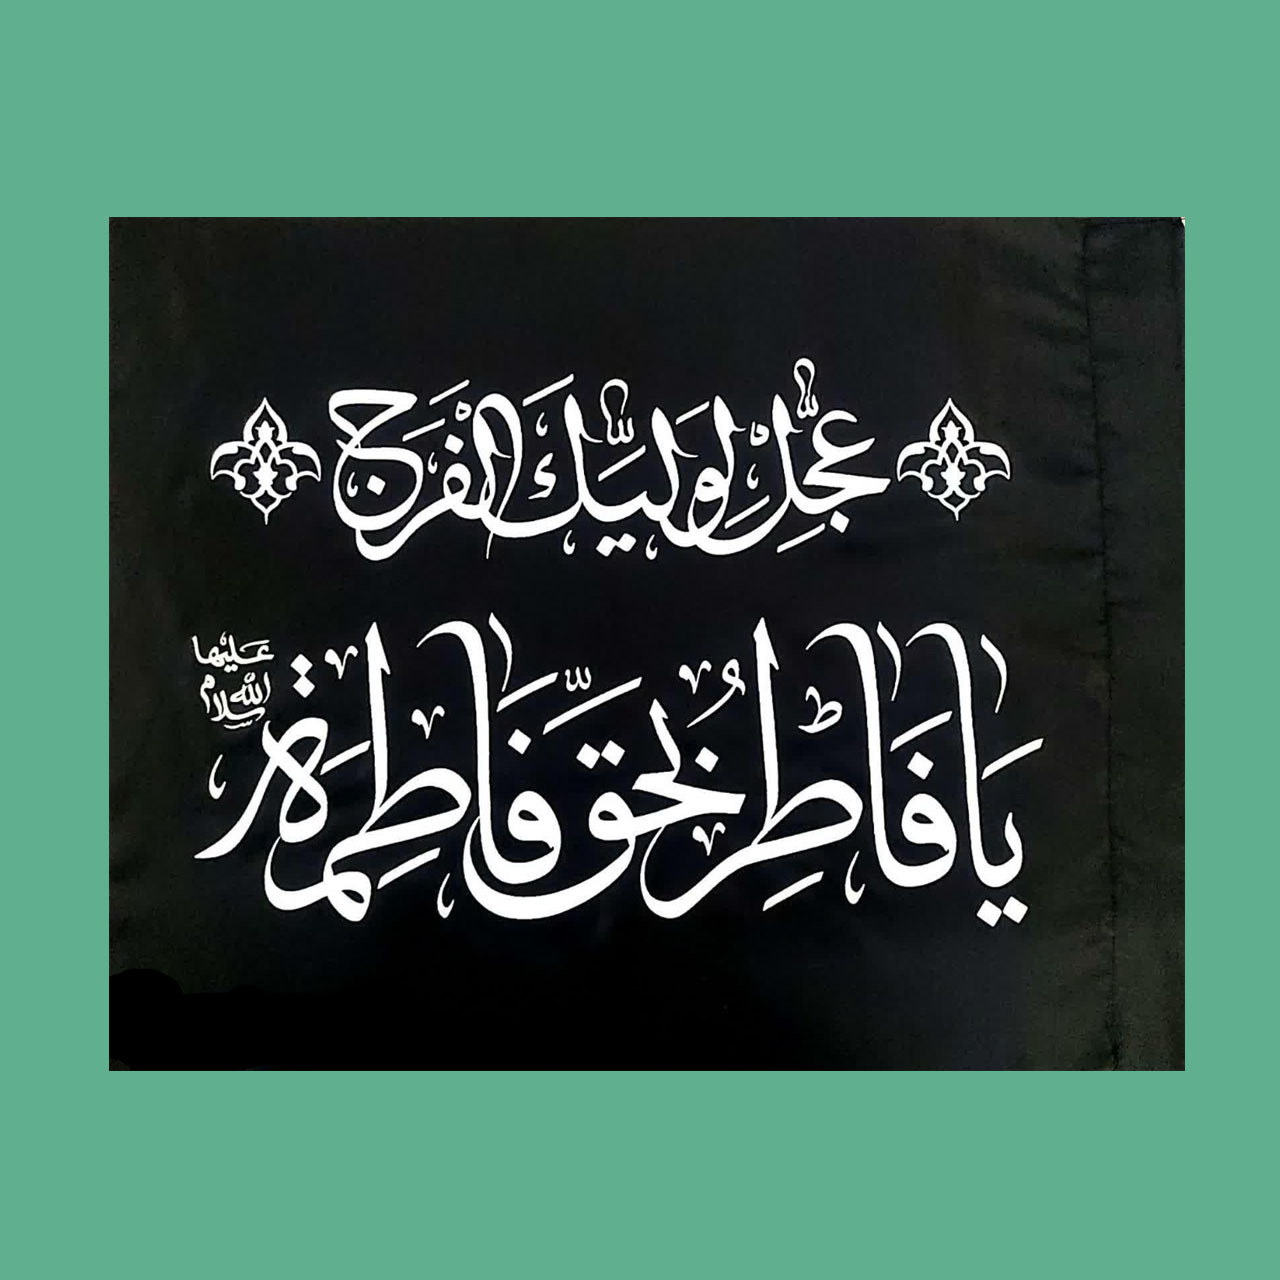 پرچم ساتن ویژه شهادت حضرت زهرا سلام الله علیها(عکس تزئینی است)